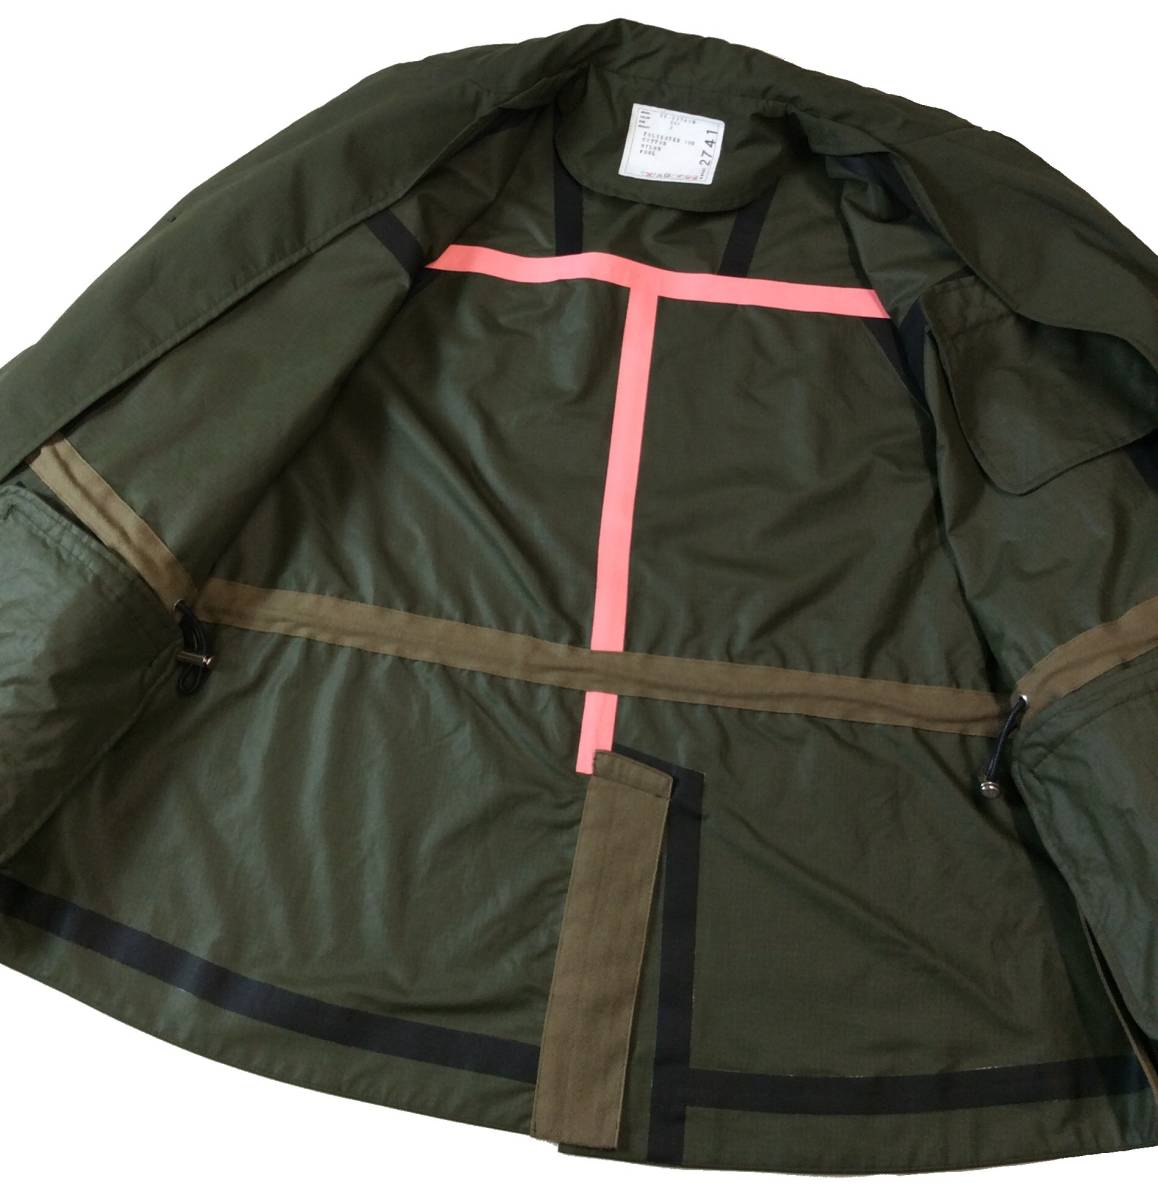 sacai サカイ 22ss デザイン テーラードジャケット リップストップナイロン オリーブグリーン メンズ 2